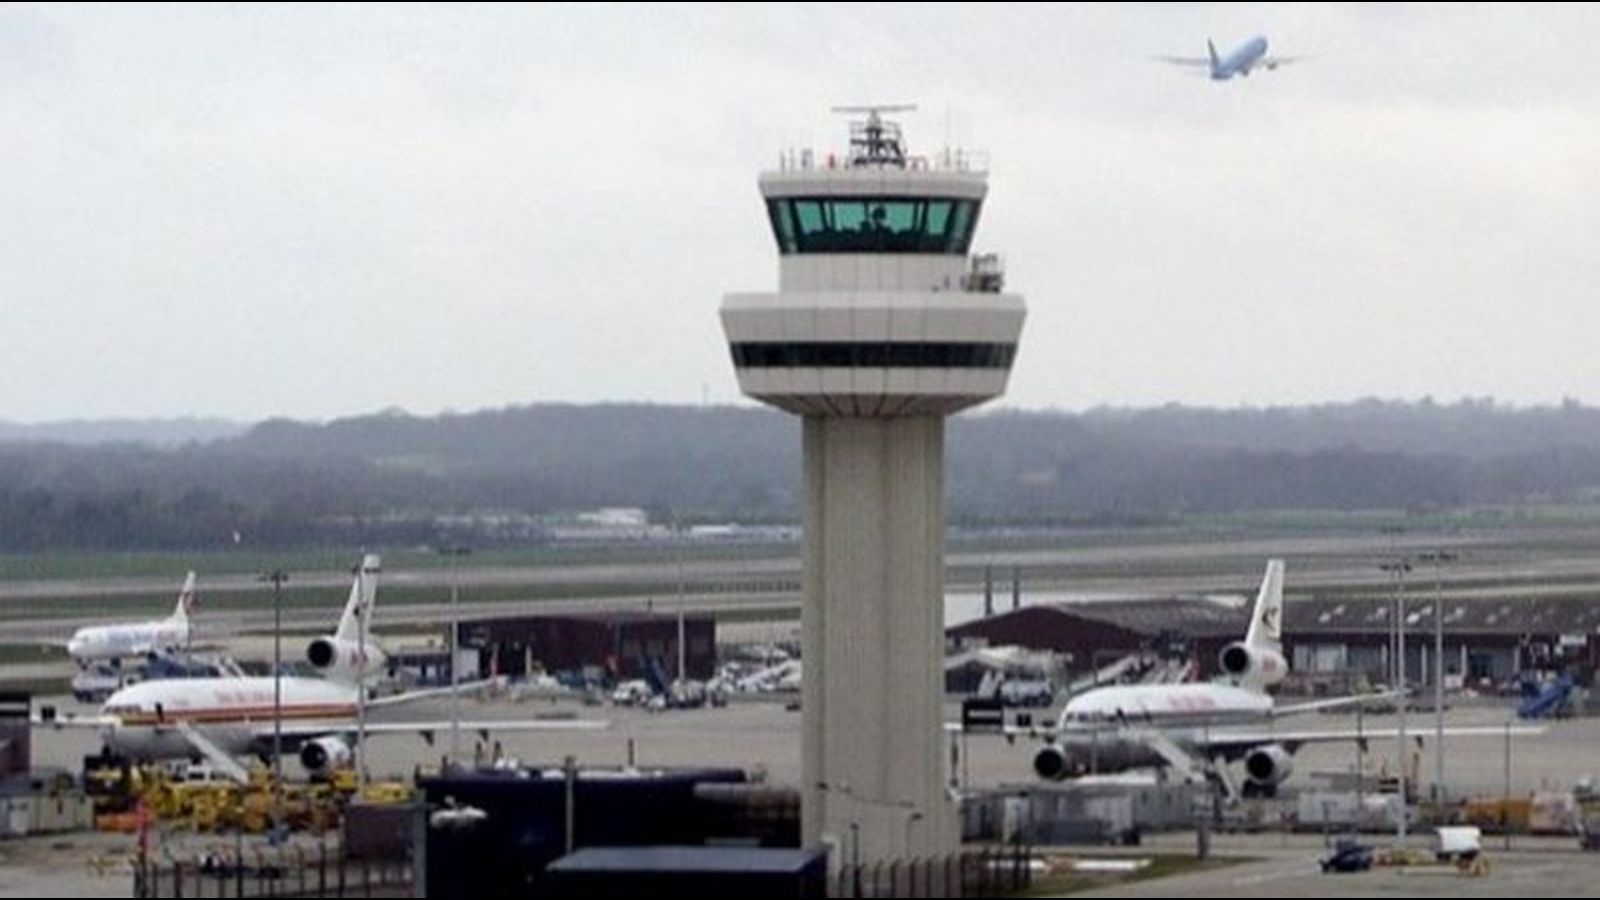 Die Flughäfen Gatwick stornieren Flüge und Schulen werden geschlossen, da sich COVID in Großbritannien ausbreitet